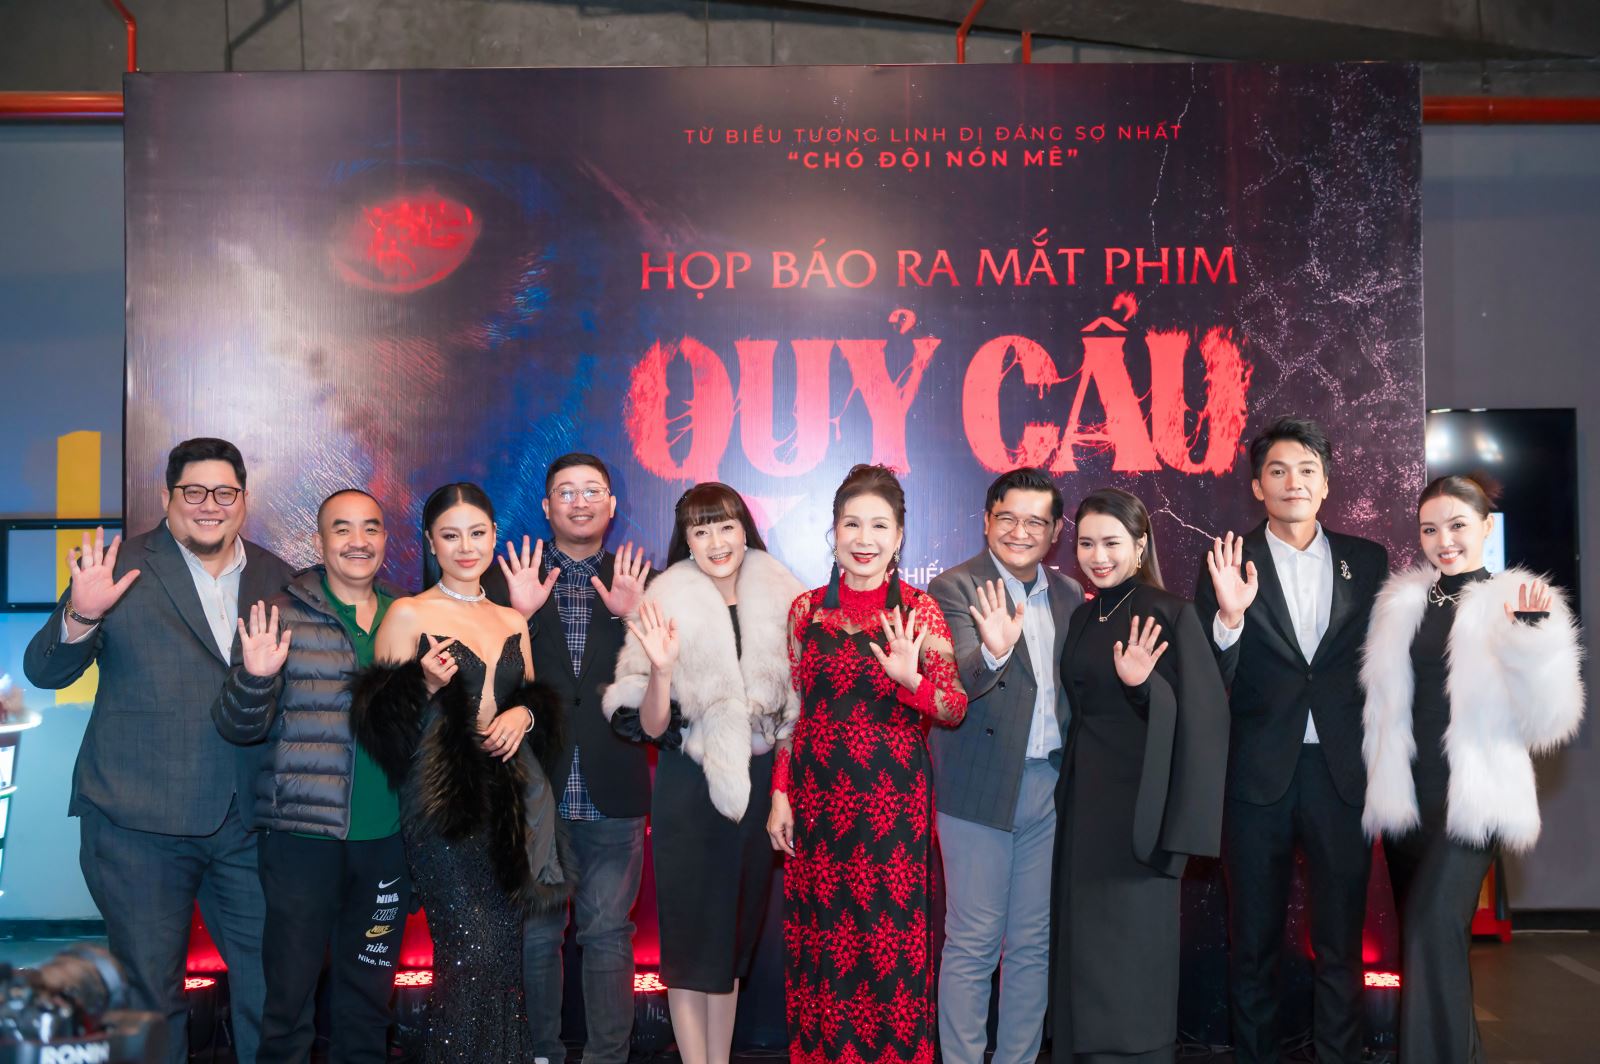 Bộ phim “Quỷ cẩu” ra mắt khán giả Hà Nội